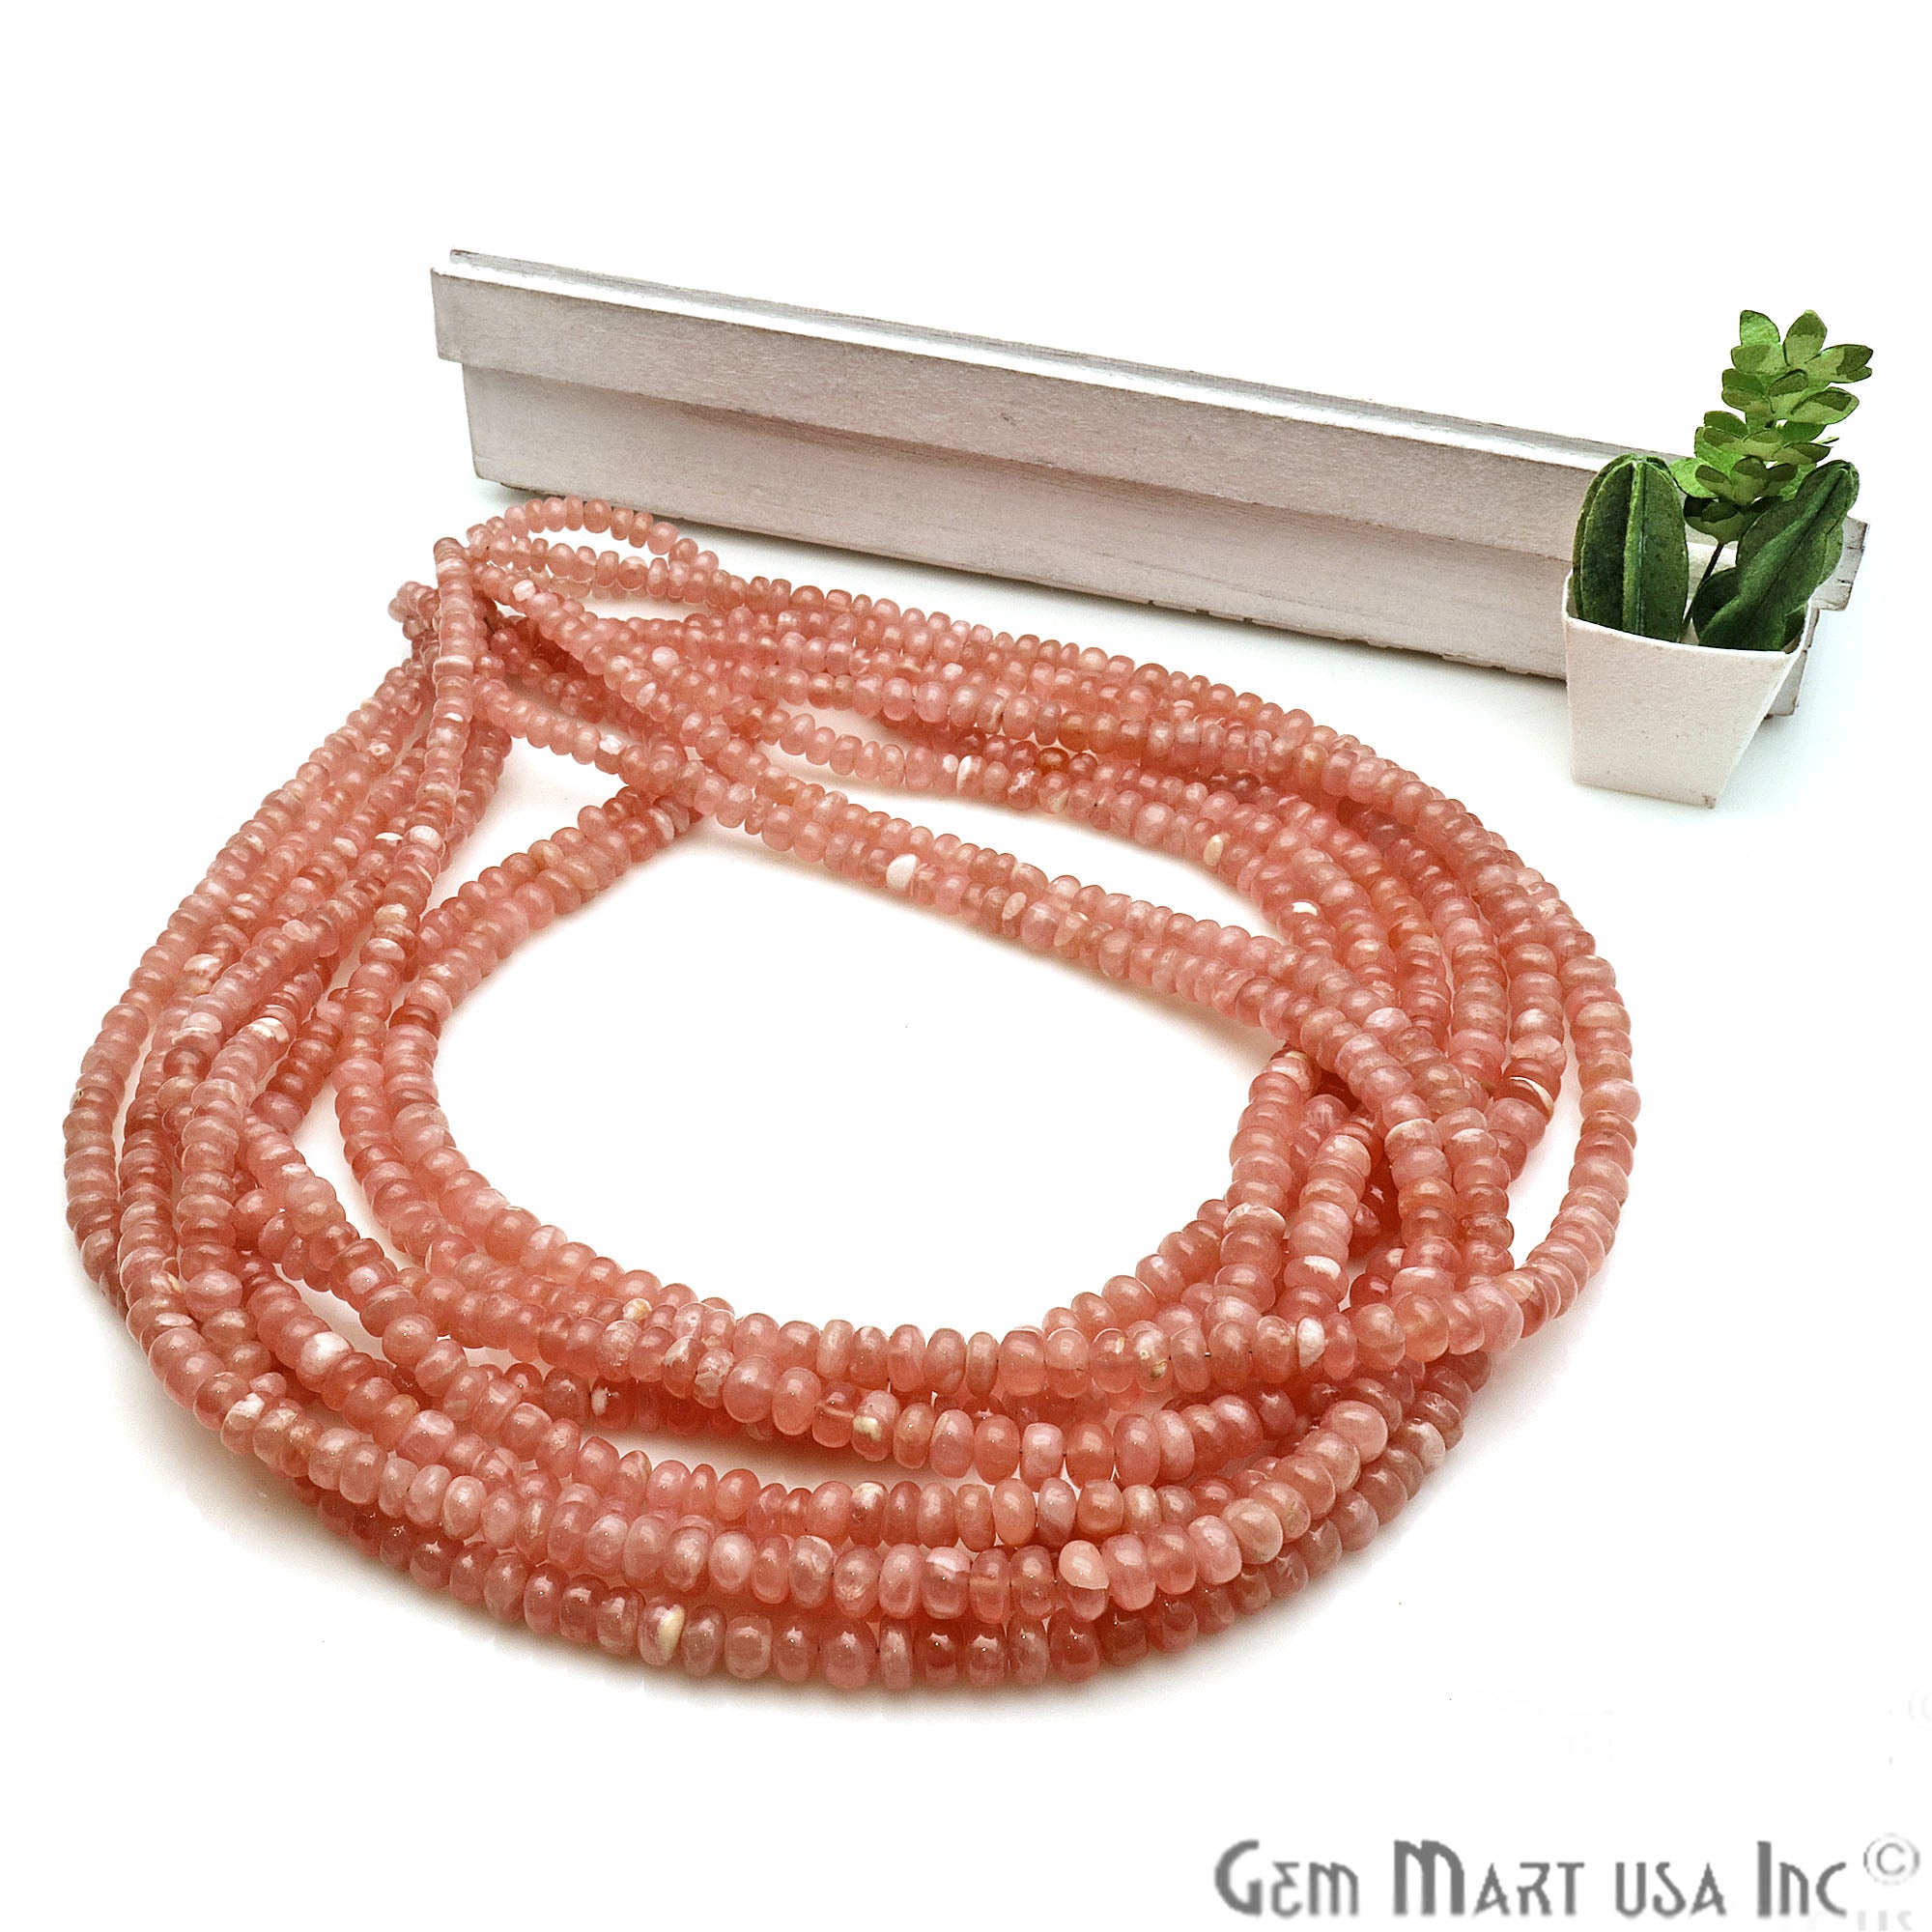 Sunstone Round 5mm Crafting Beads Gemstone Strands 16INCH - GemMartUSA